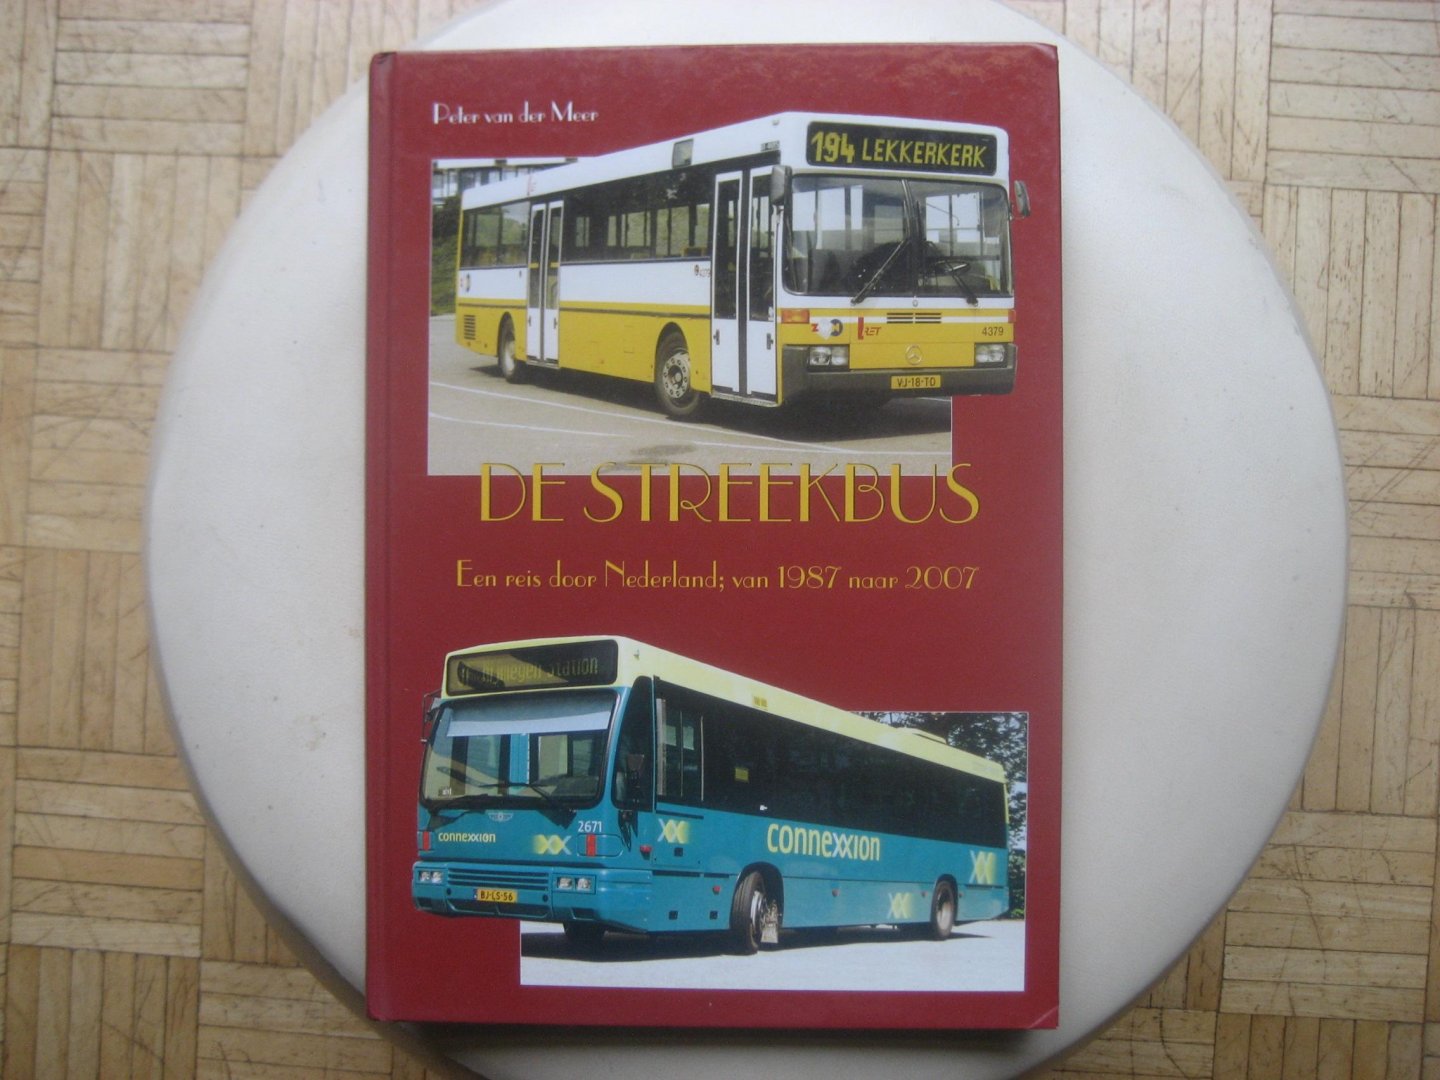 Peter van der Meer - De Streekbus / Een reis door Nederland; van 1987 naar 2007